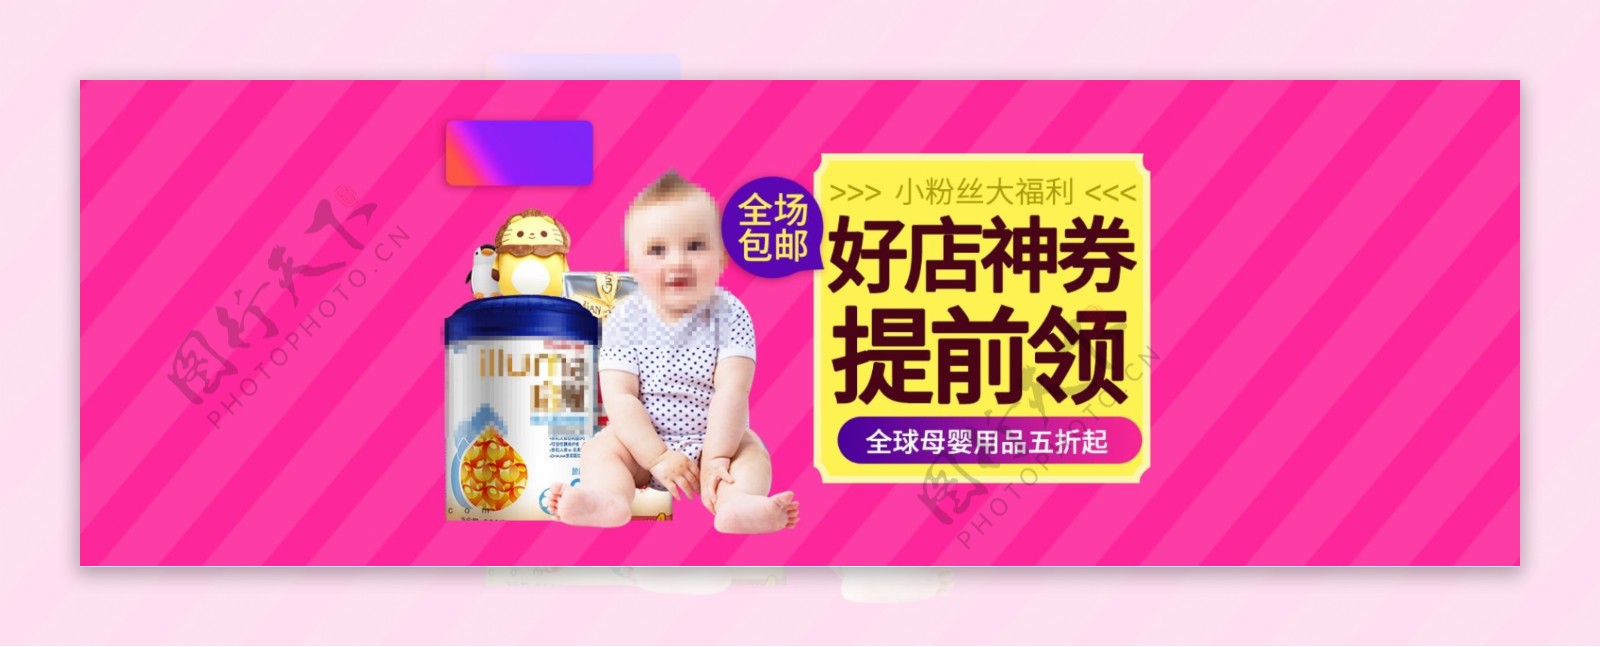 母婴专场儿童节海报banner设计